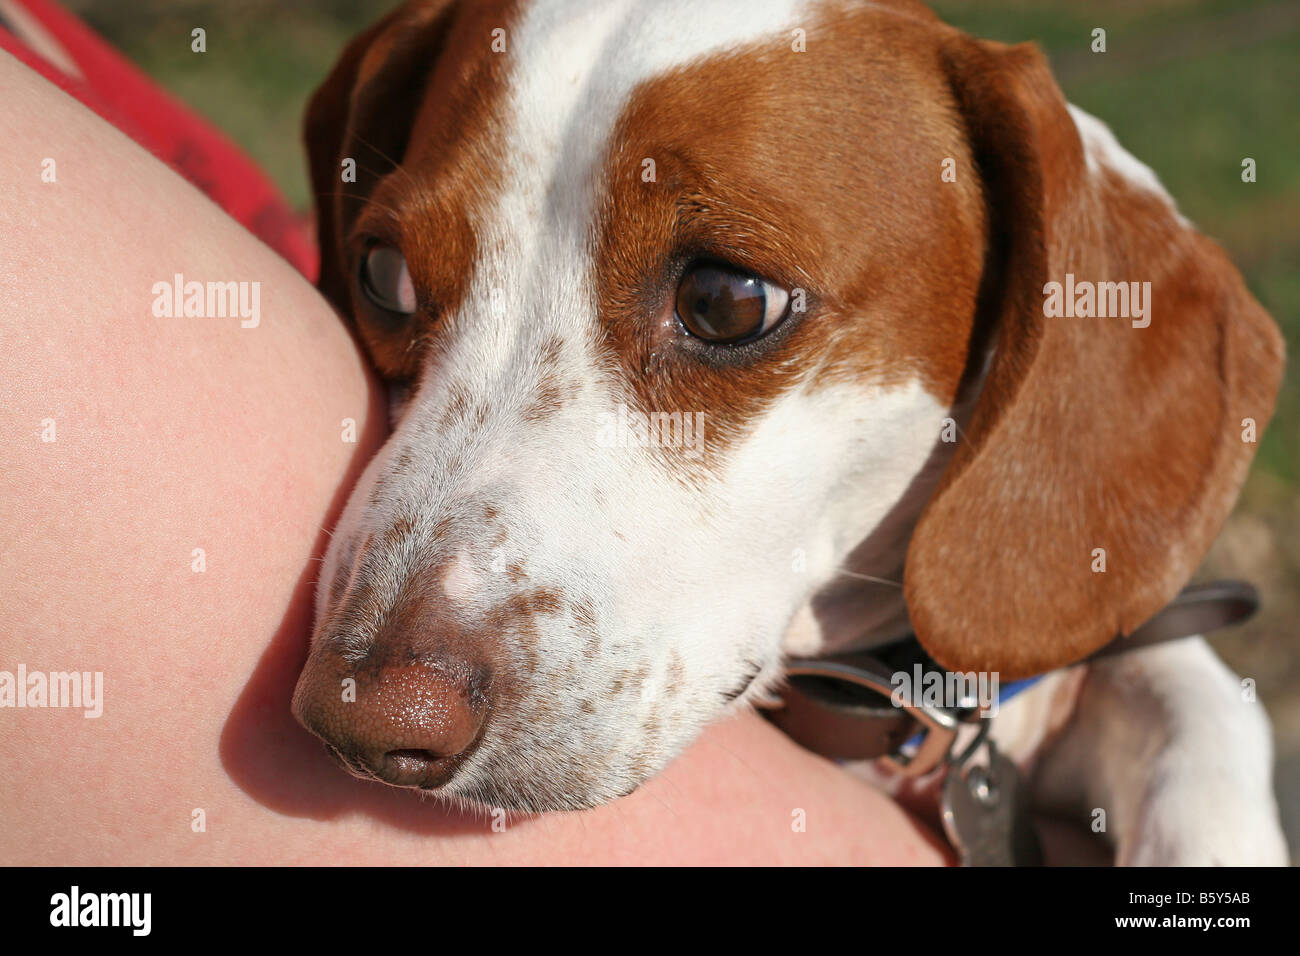 Un raro marrón y blanco de raza teckel cachorro nervioso con una mirada en su rostro. Foto de stock